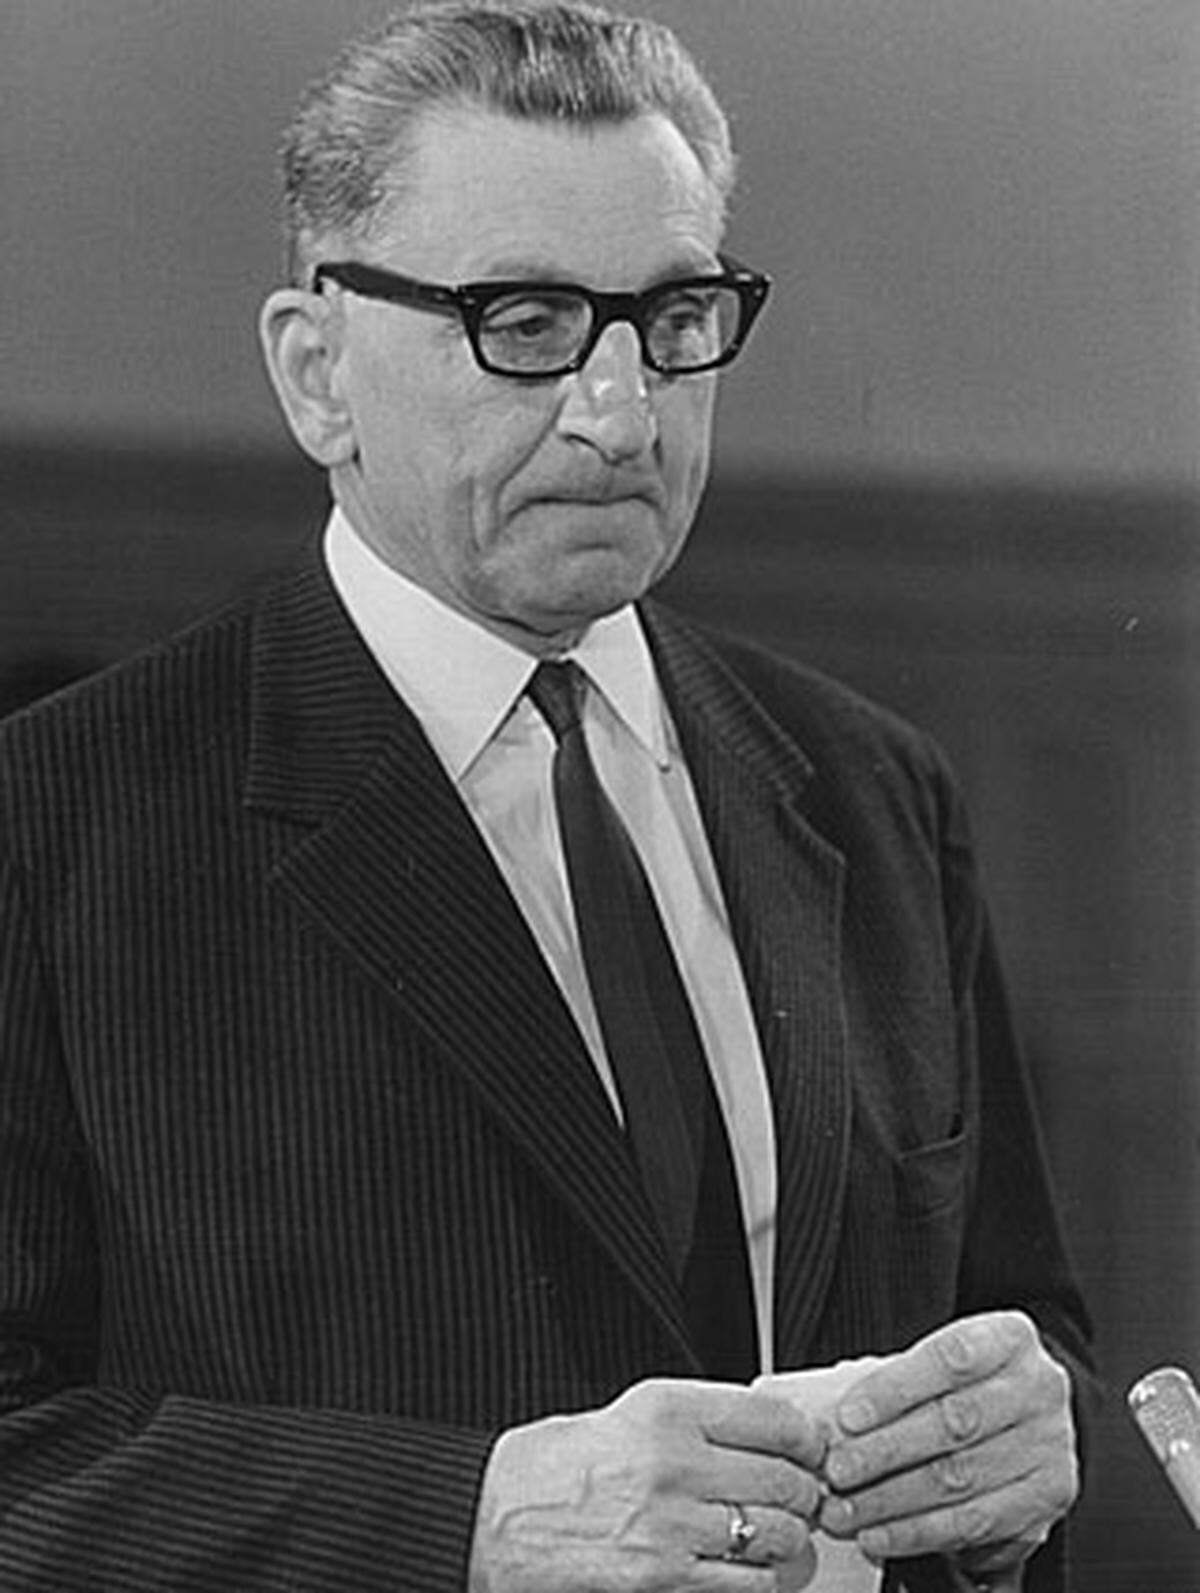 1968 wurde der frühere niederösterreichische Landeshauptmannstellvertreter Viktor Müllner (ÖVP) wegen Amtsmissbrauchs und Untreue zu vier Jahren Haft verurteilt. Er hatte in den 50er und 60er Jahren Zinsen aus angelegten Geldern des Landes, der ÖVP und des ÖAAB "gespendet".